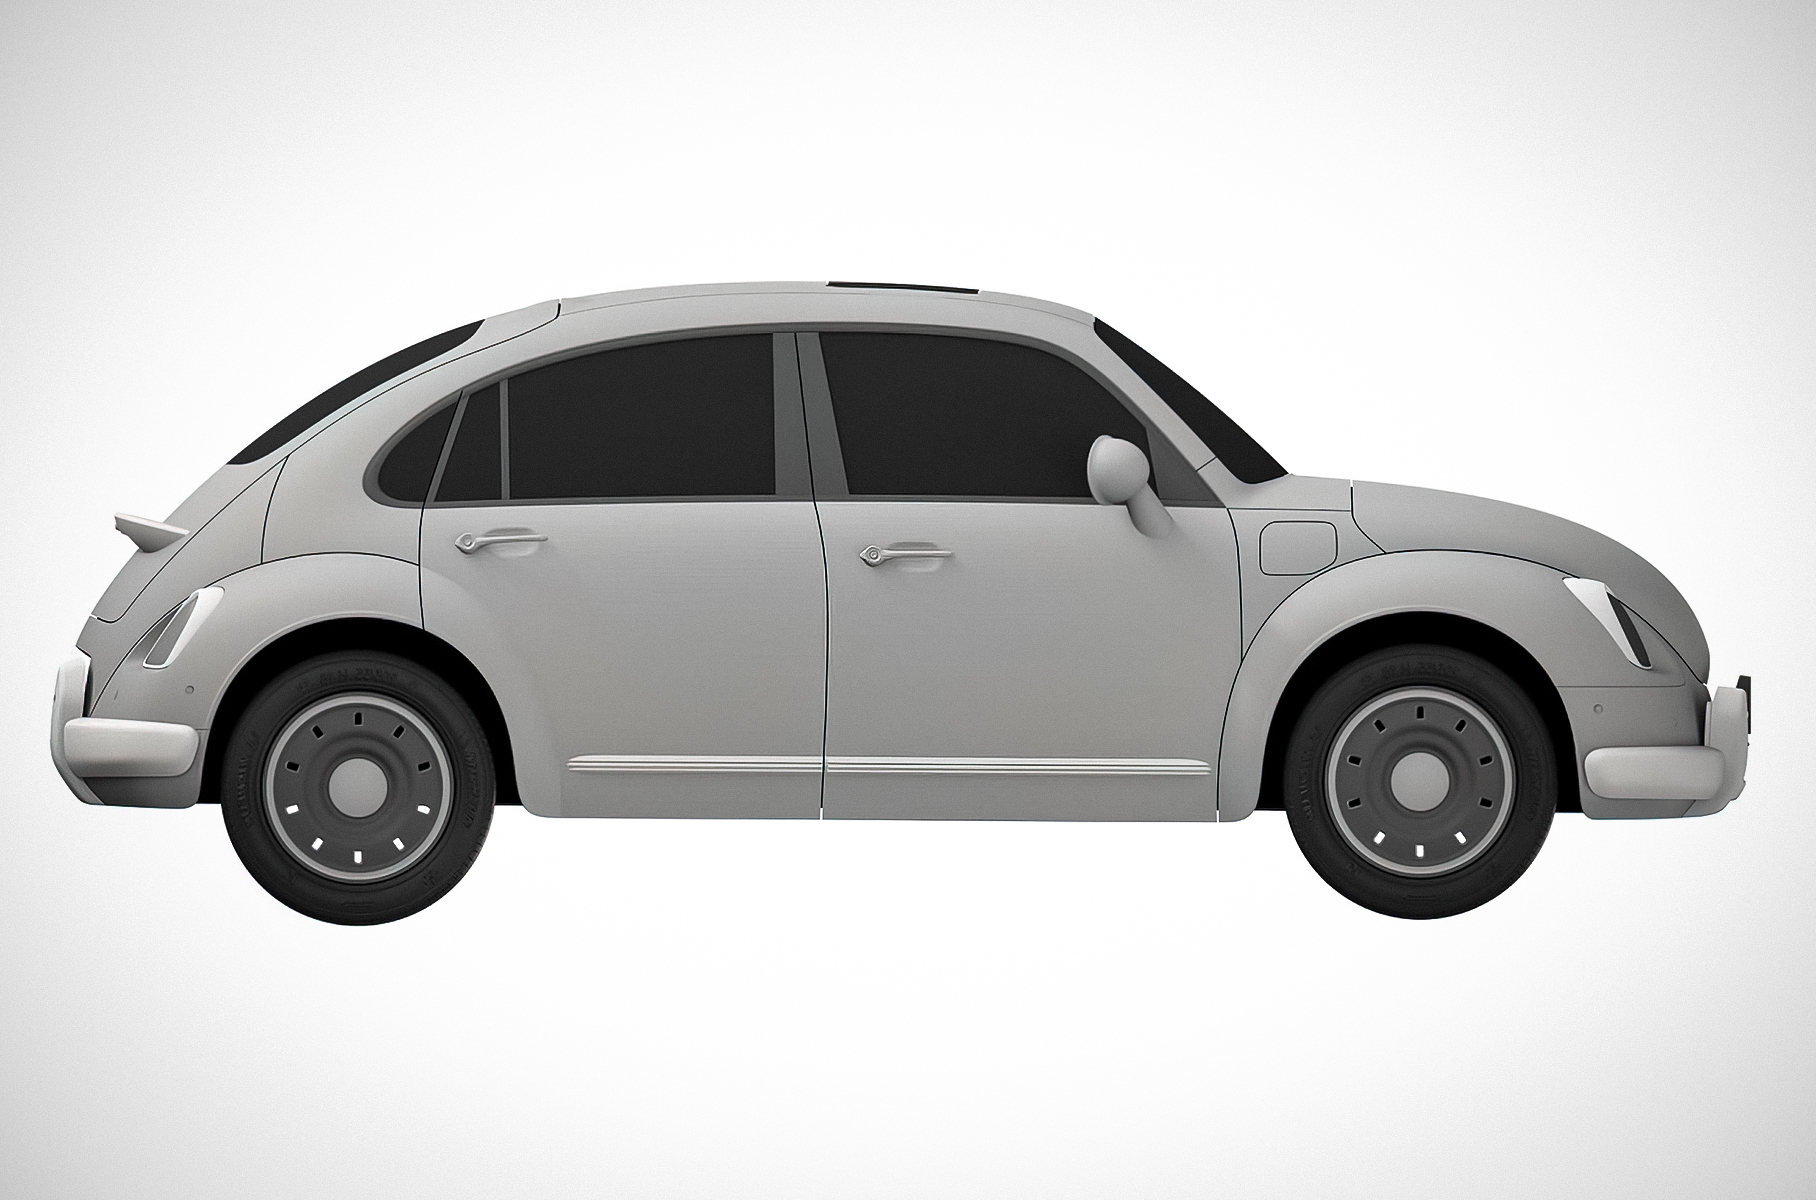 Great Wall запатентовал «клона» Volkswagen Beetle. Теперь у китайской компании могут возникнуть серьезные проблемы